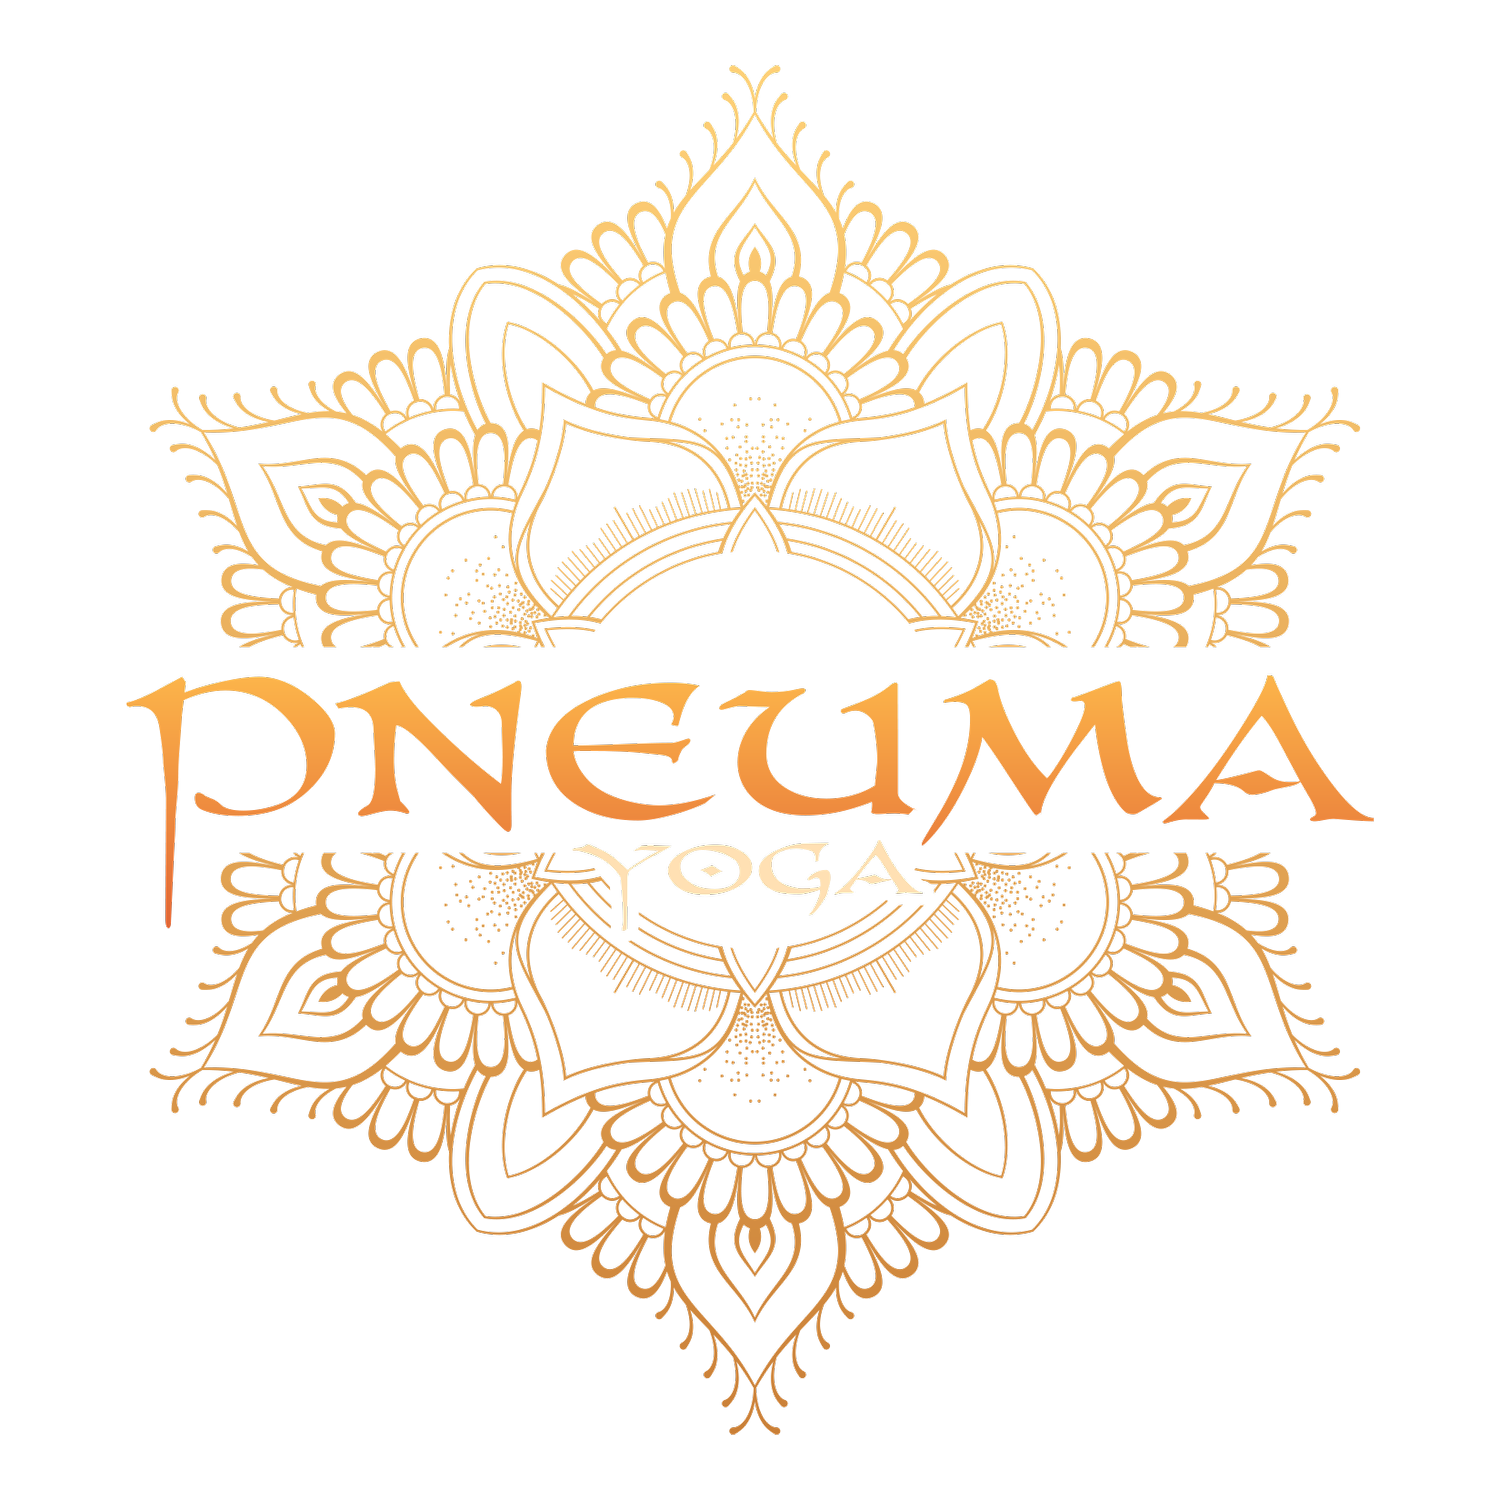 Pneuma Yoga